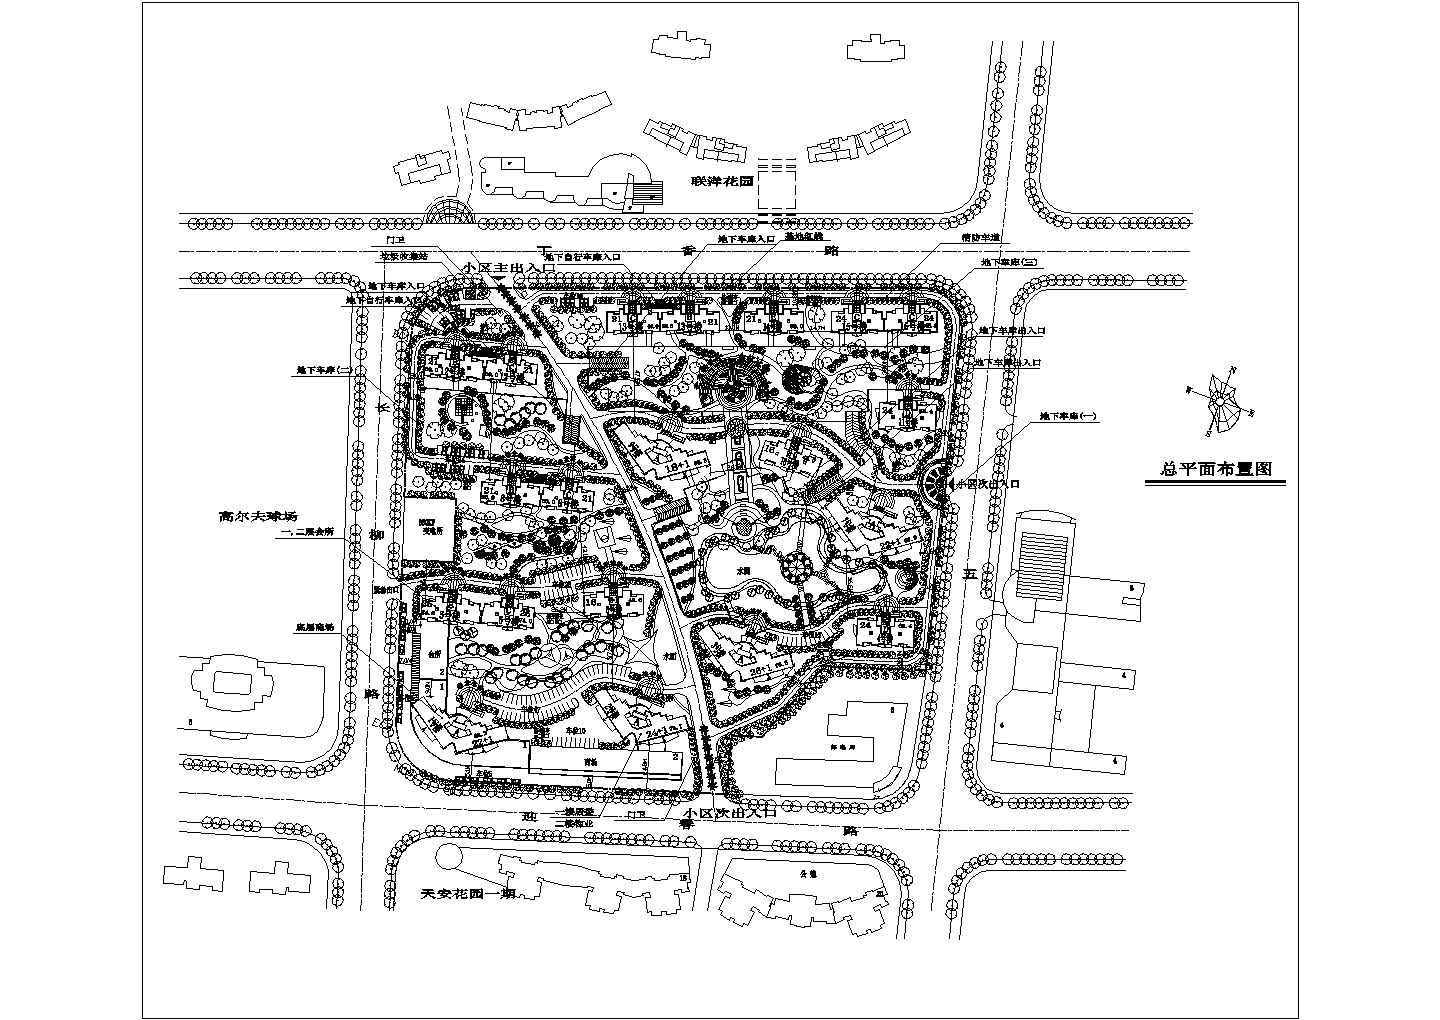 上海联洋花园规划设计方案图